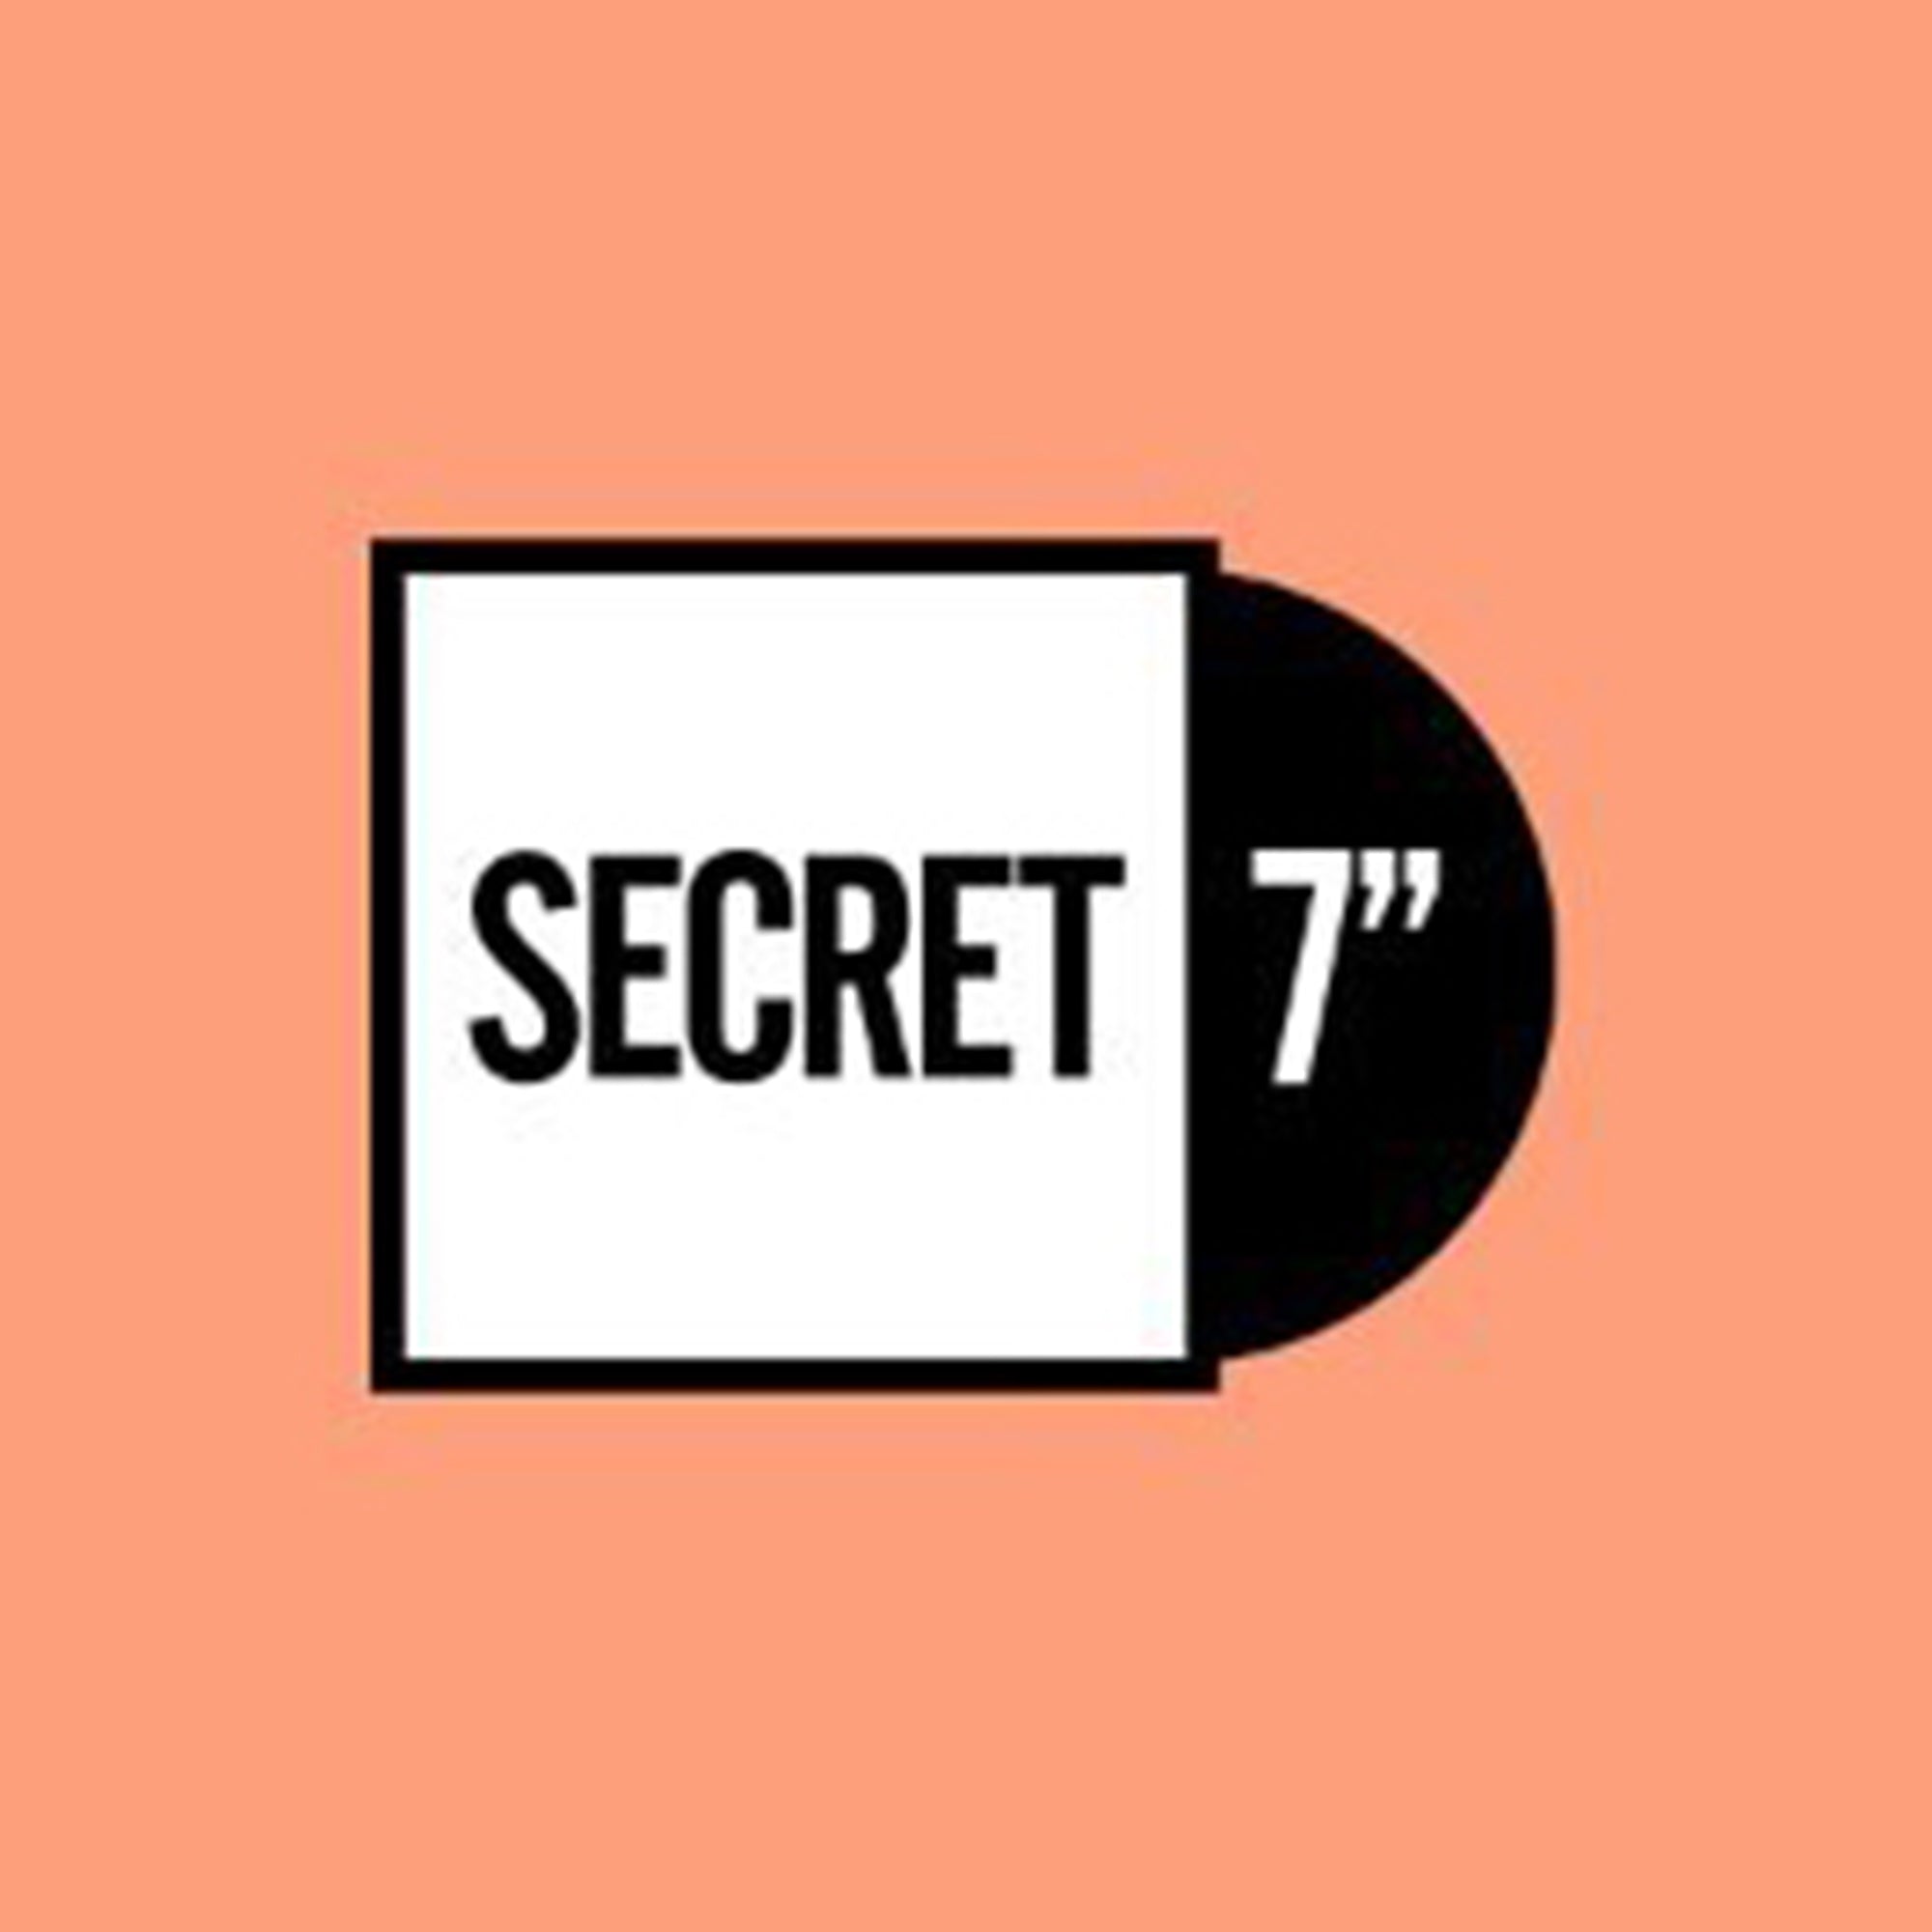 Celebrating 7 Years Of Secret 7